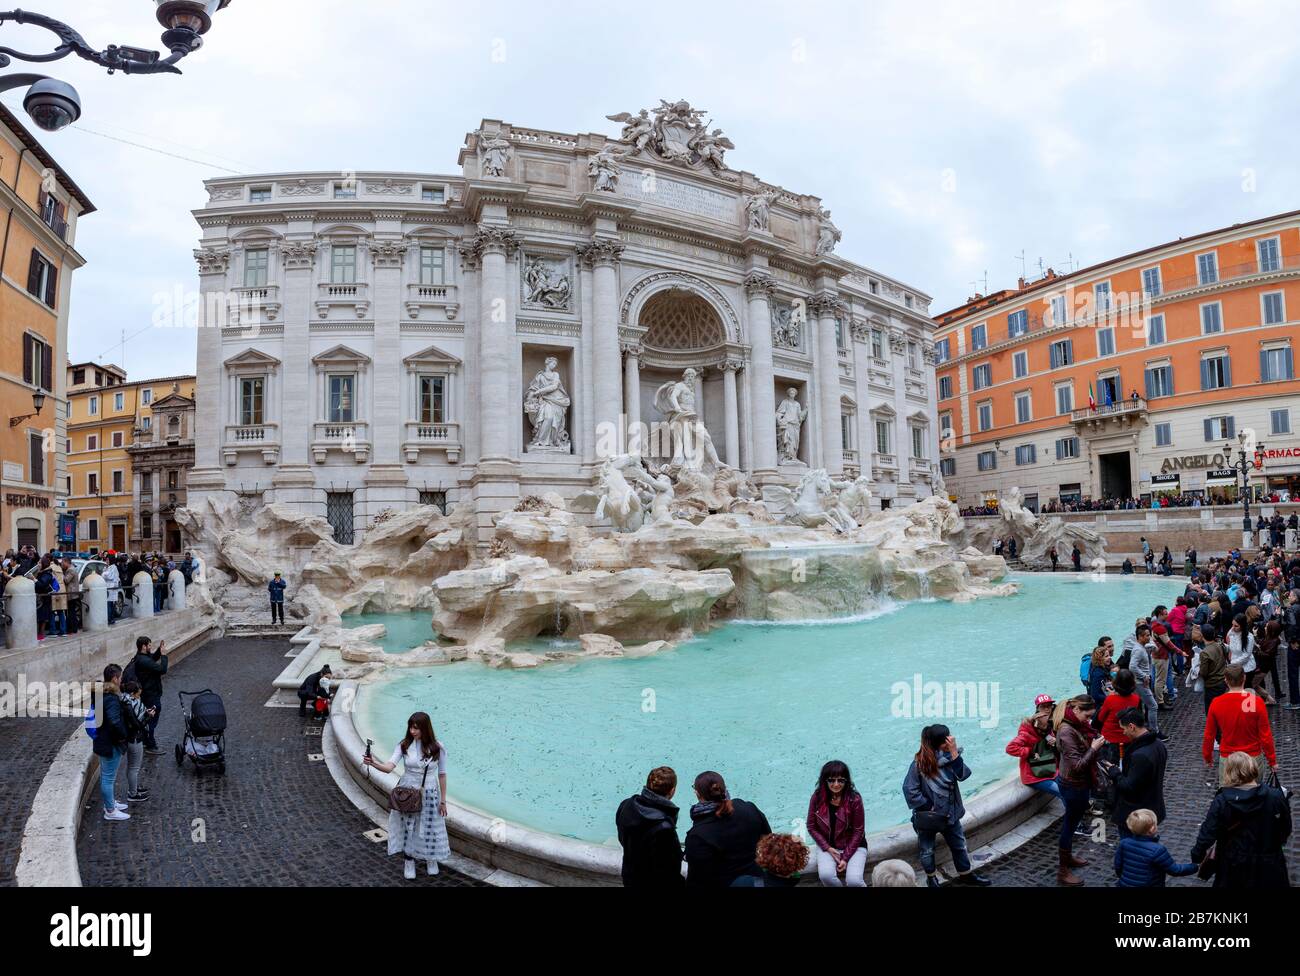 rome italie - notember8,2016 : un grand nombre d'attractions touristiques à la fontaine de trevi une des destinations touristiques les plus populaires de rome italie Banque D'Images